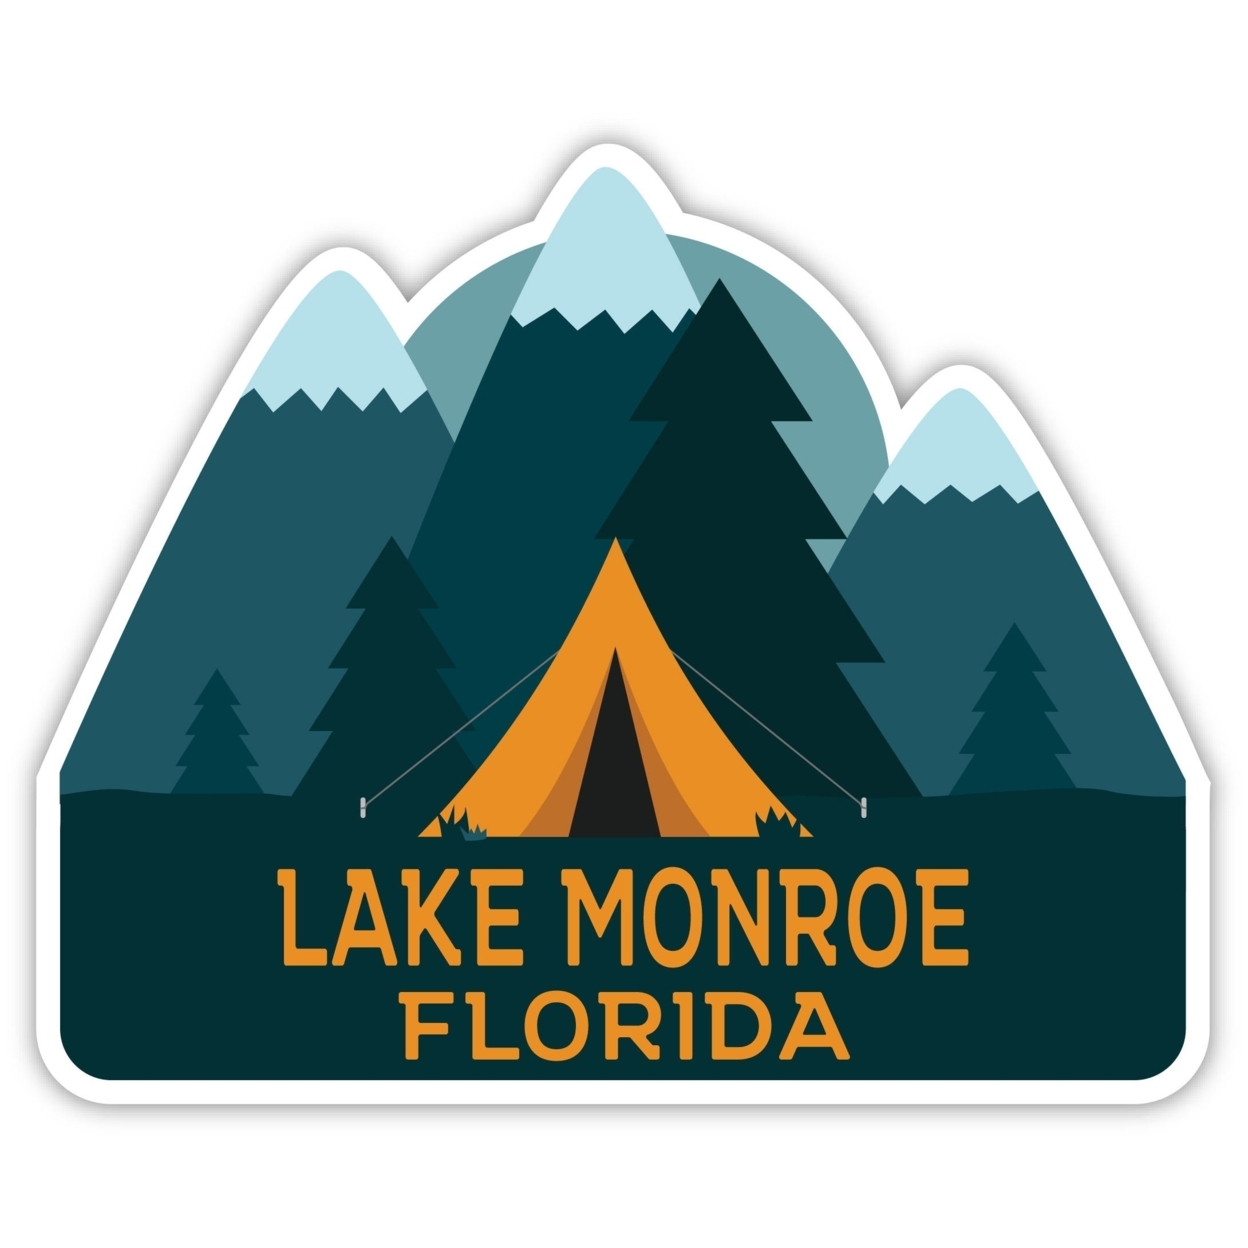 Lake Monroe Florida Souvenir Decorative Stickers (Choose Theme And Size) - 2-Inch, Bear